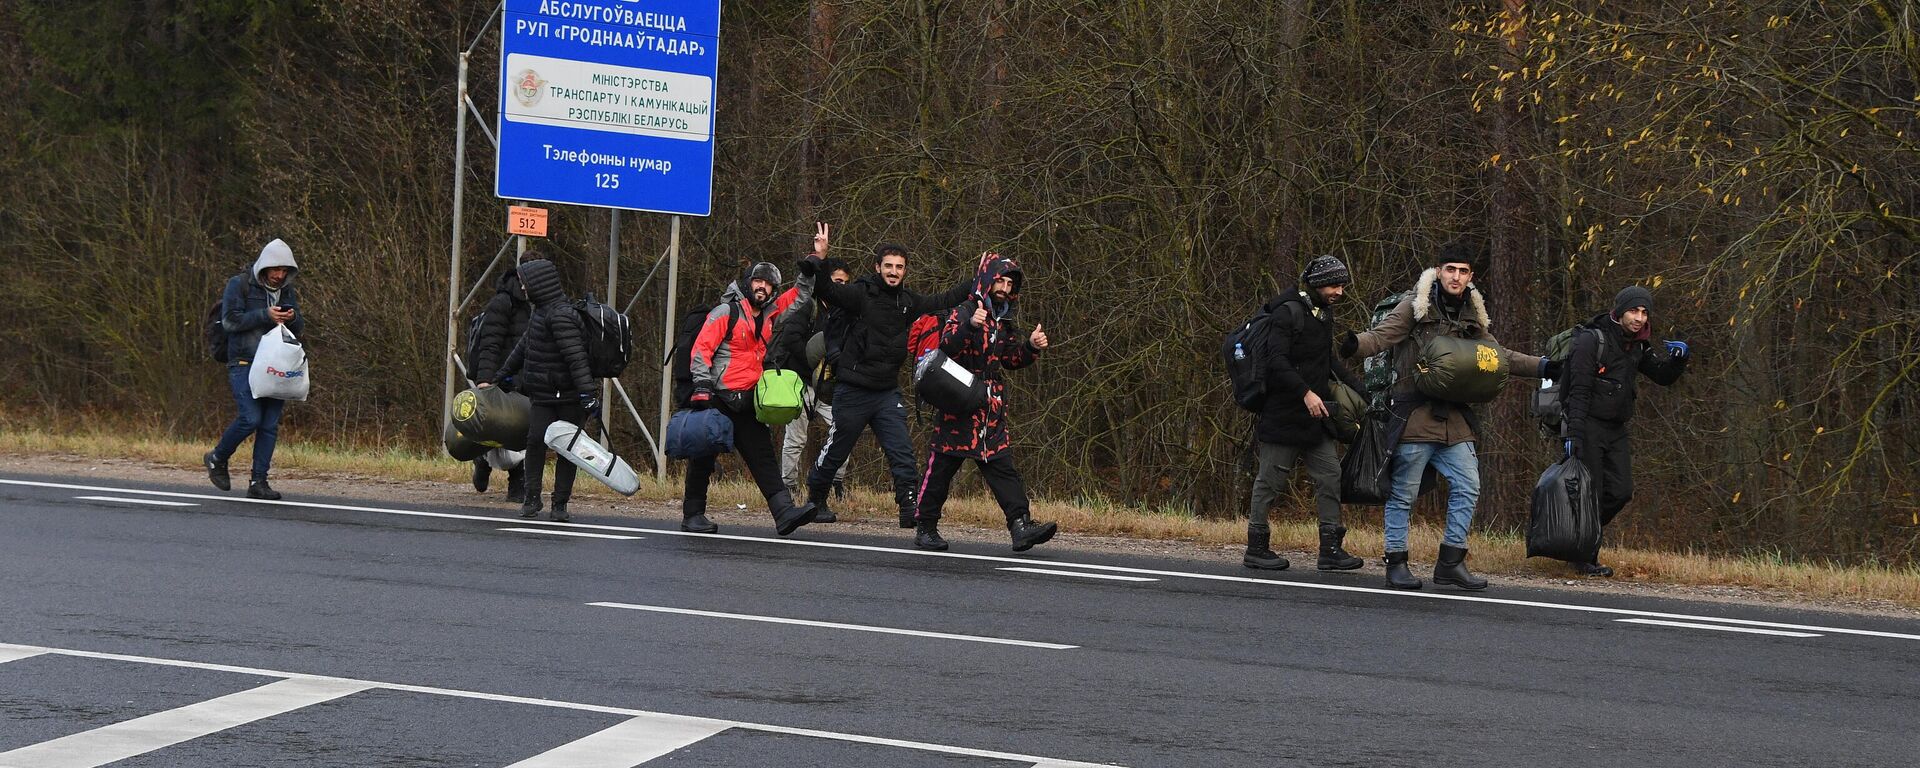 Группа беженцев двинулась к границе Польши по трассе М-6 - Sputnik Беларусь, 1920, 08.11.2021